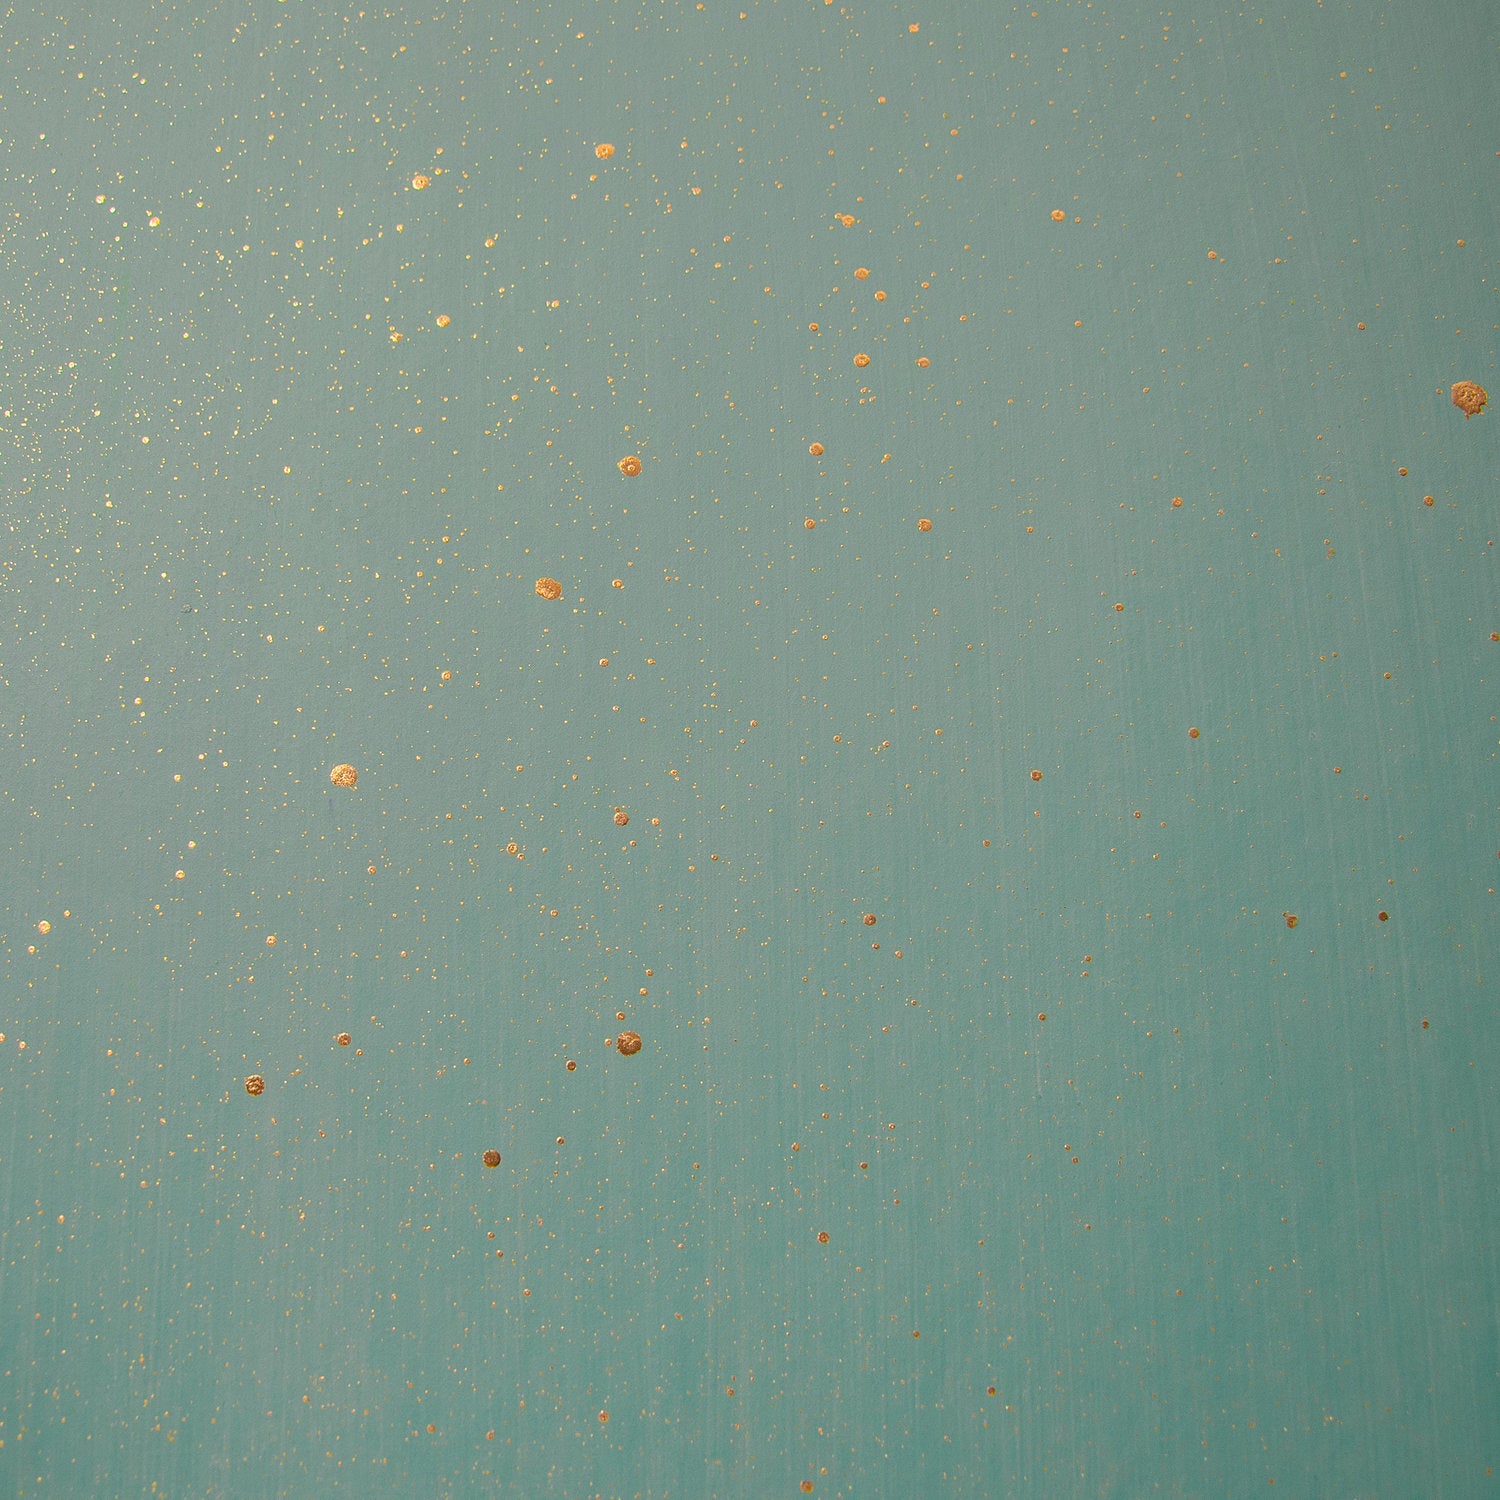 Detail of a wallpaper in a random splattered pattern in metallic gold on a green field.